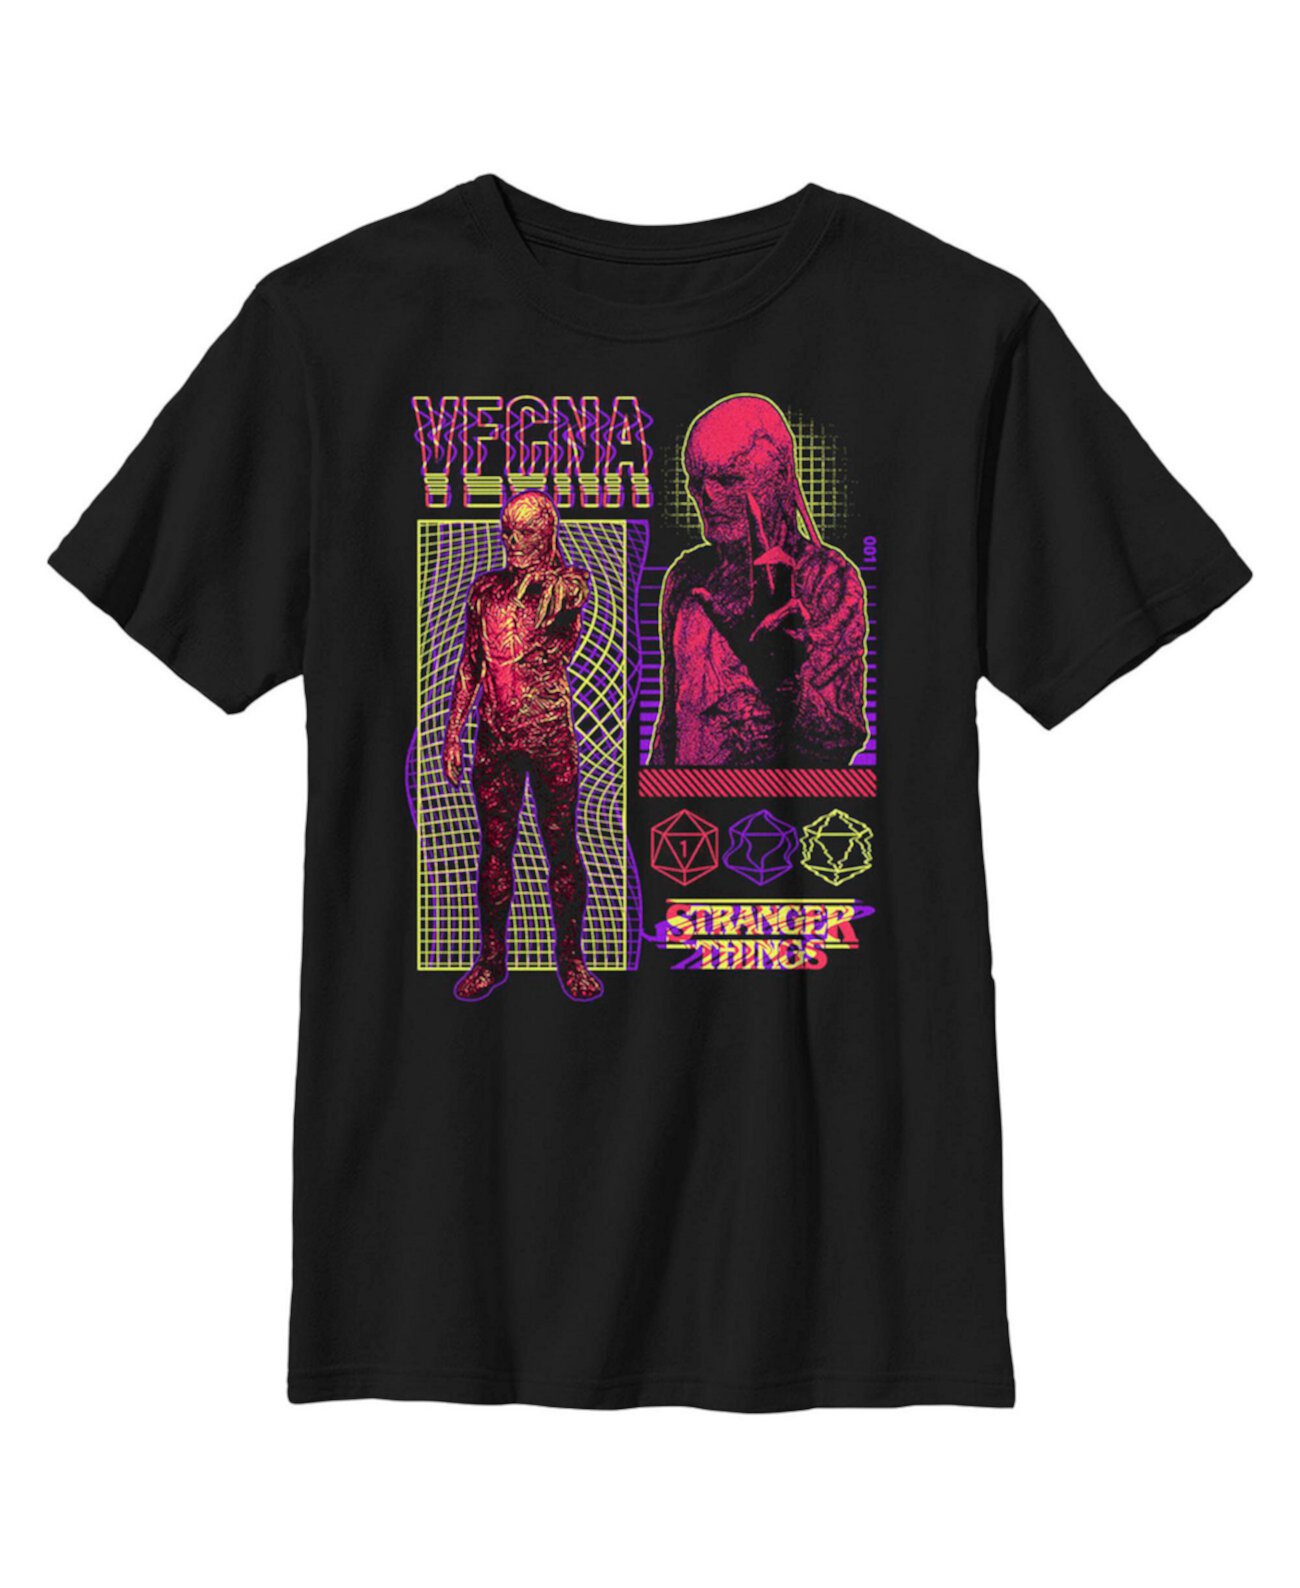 Детская футболка «Очень странные дела» Vecna Evil Villain для мальчиков Netflix